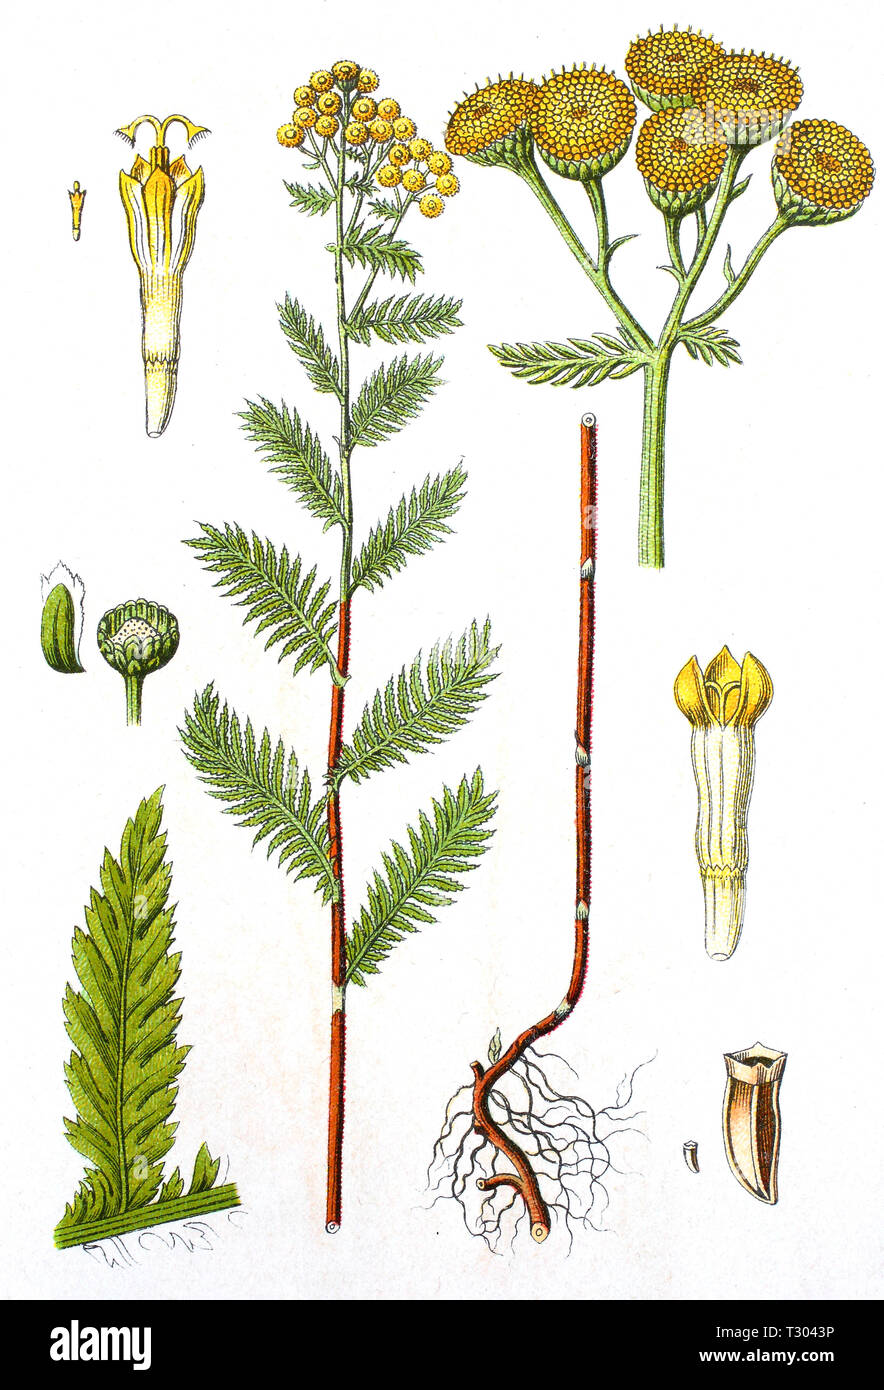 Mejor reproducción digital de una ilustración de Rainfarn, Tanacetum vulgare, Tansy, desde una impresión original del siglo XIX. Foto de stock